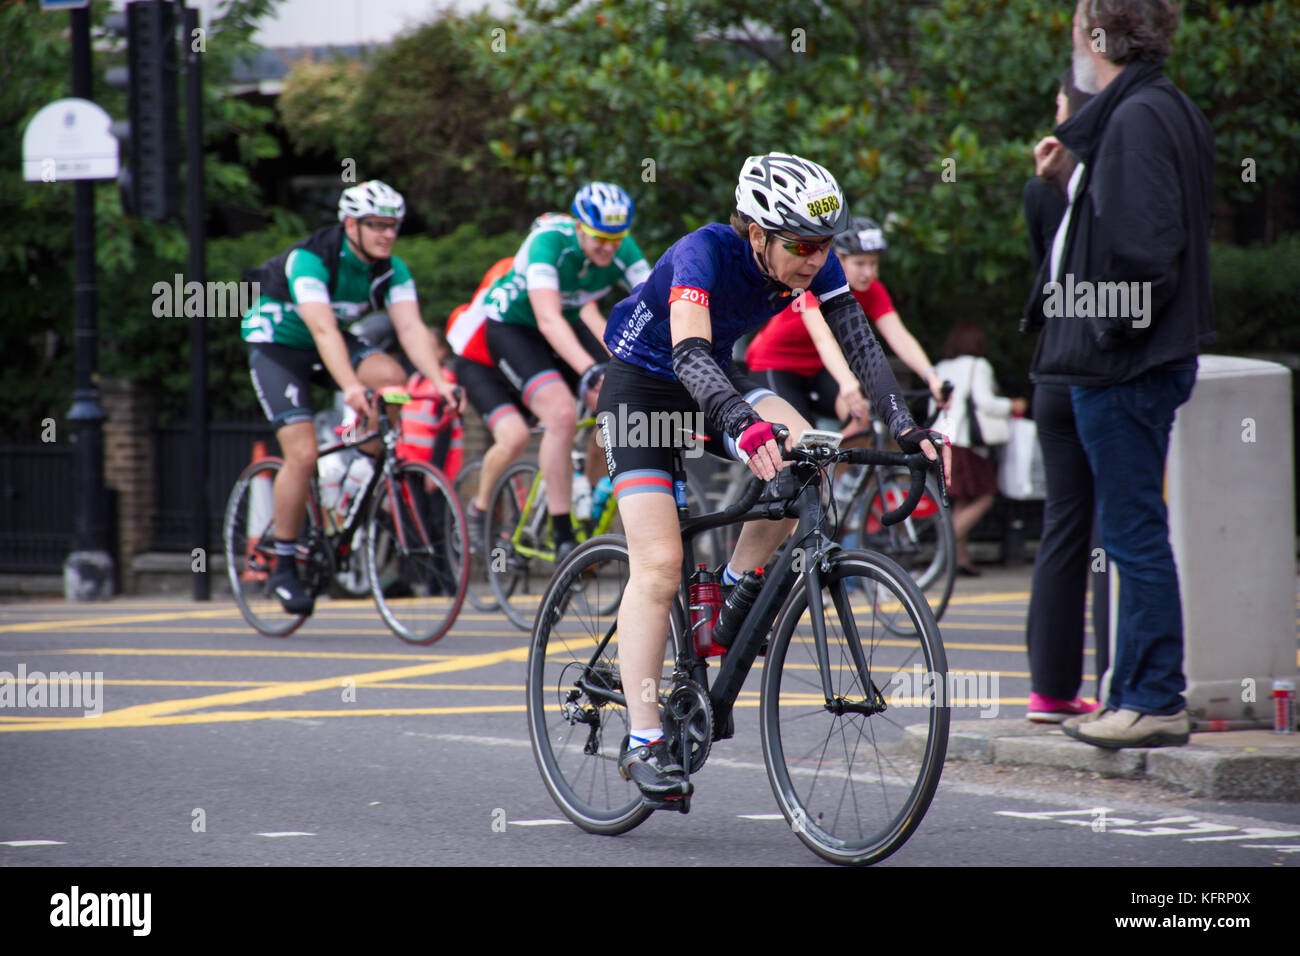 Frau mittleren Alters, die in den weißen Helm, schwarz Fahrrad auf jährlichen London prudential Radrennen. London, Vereinigtes Königreich, Sommer 2017. Stockfoto